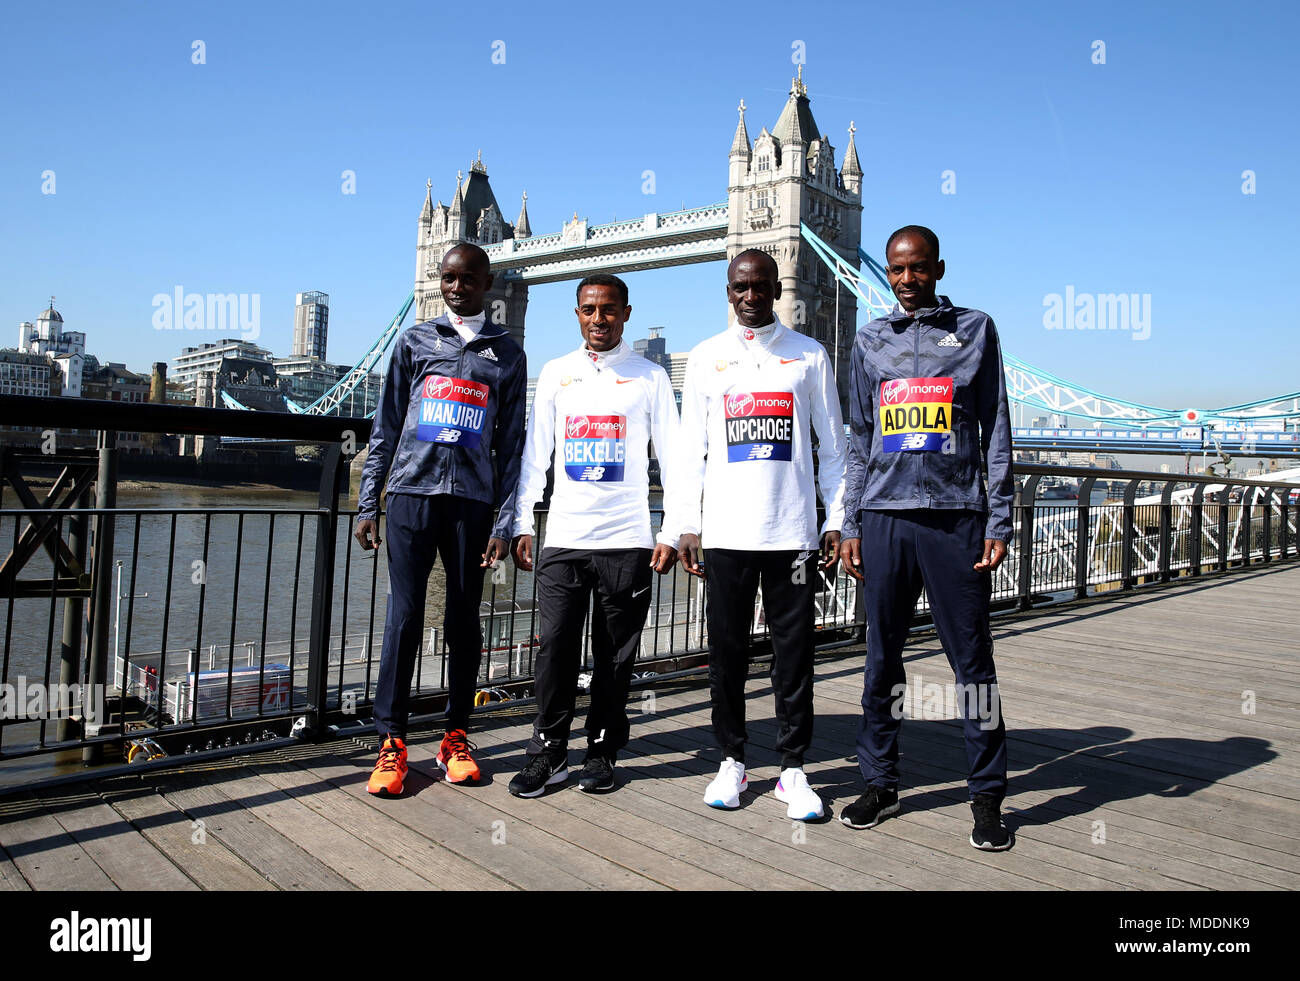 Il Kenya è Daniel Wanjiru, Etiopia's Kenenisa Bekele, KENIOTA ELIUD KIPCHOGE e Etiopia's Guye Adola posano per una foto nella parte anteriore del ponte della torre durante il media day al Tower Hotel, Londra. Foto Stock